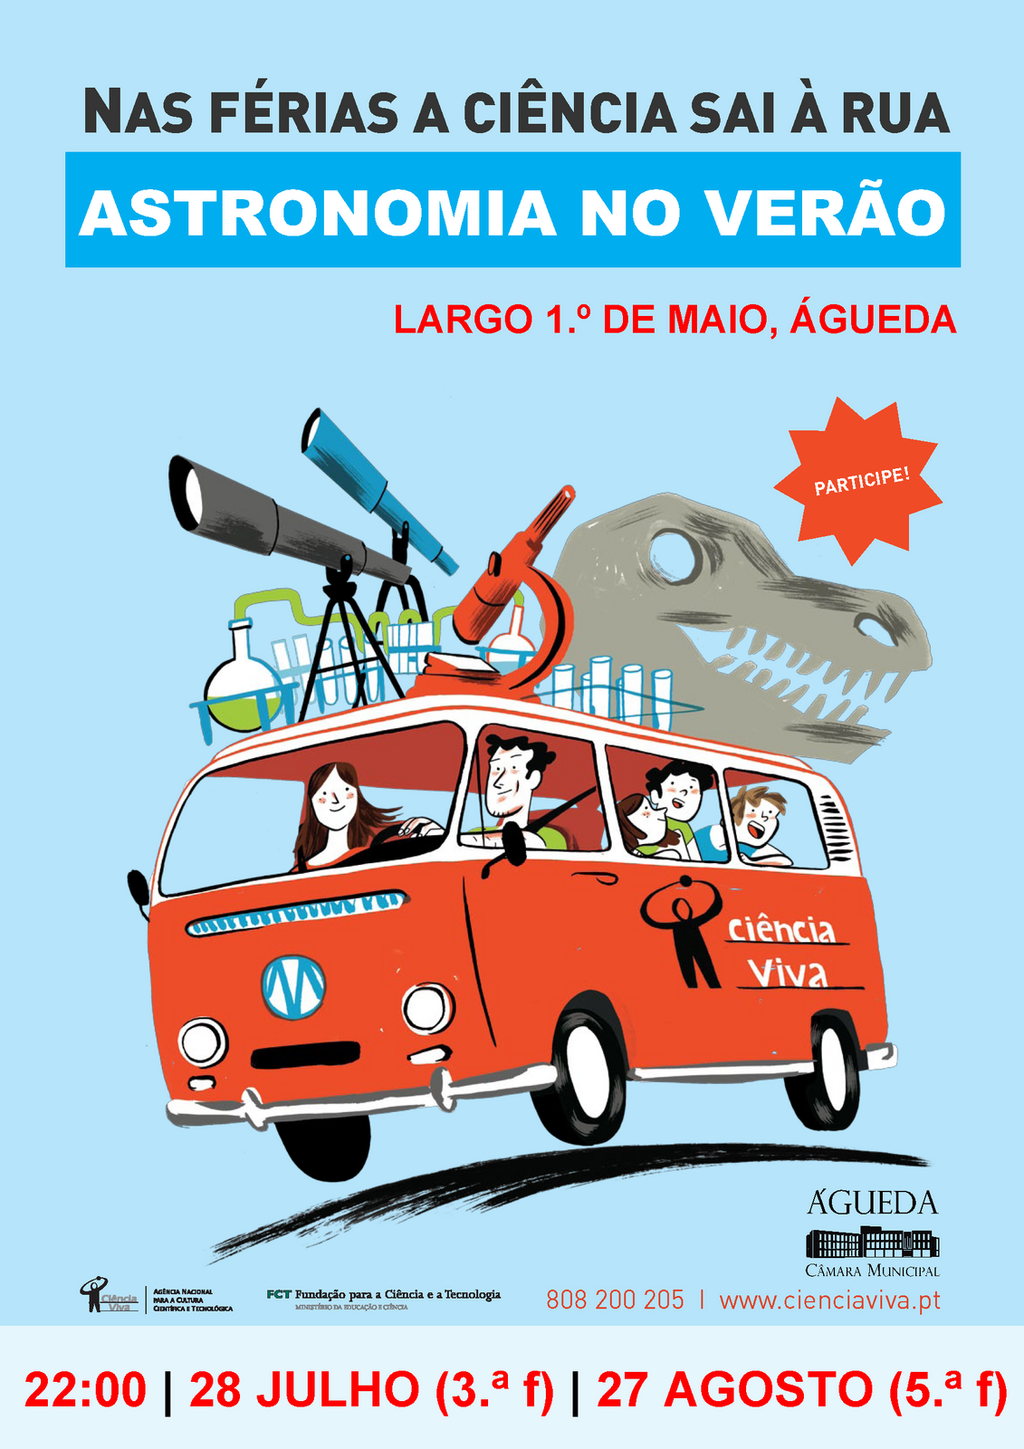 28 de julho e 27 de agosto :: Autarquia promove Astronomia no Verão no Largo 1.º de Maio